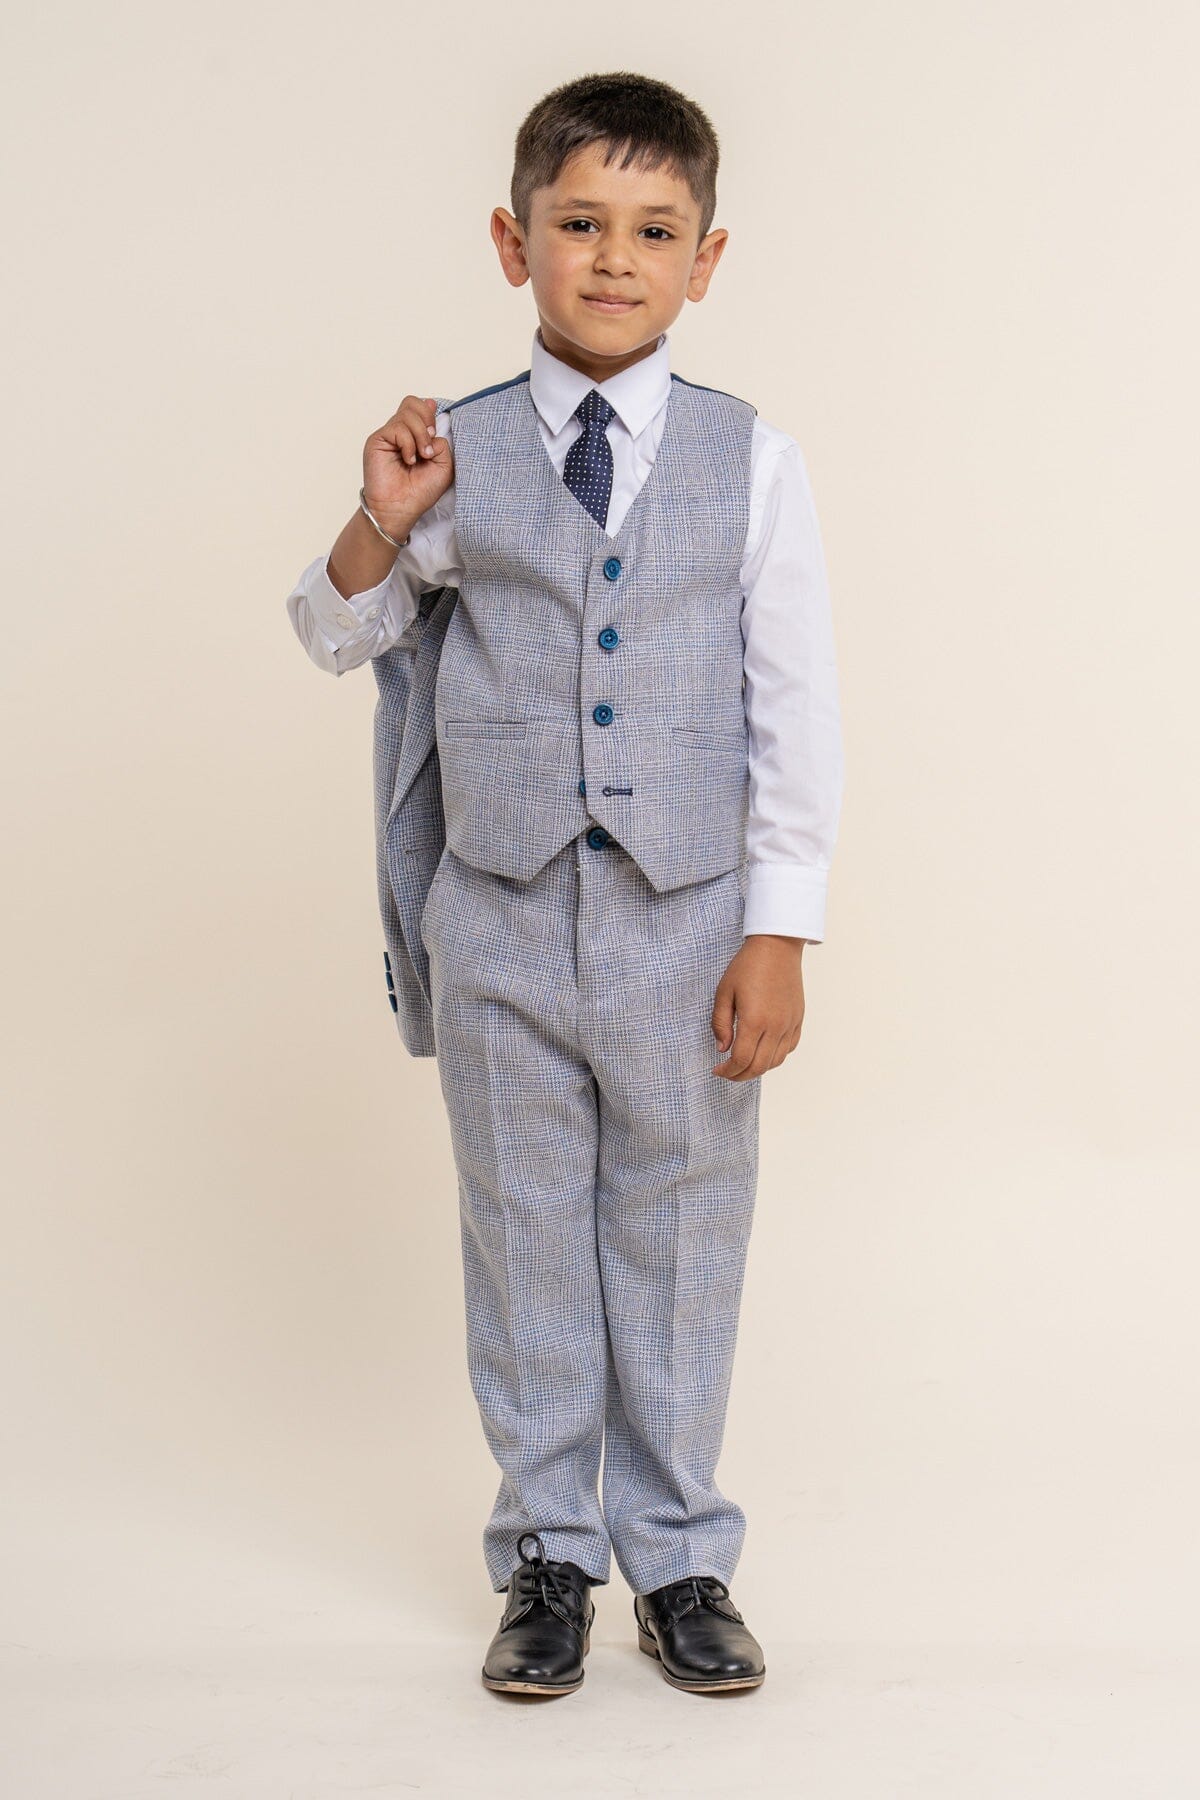 Caridi Sky Boys 3 Piece Suit - Childrenswear - 